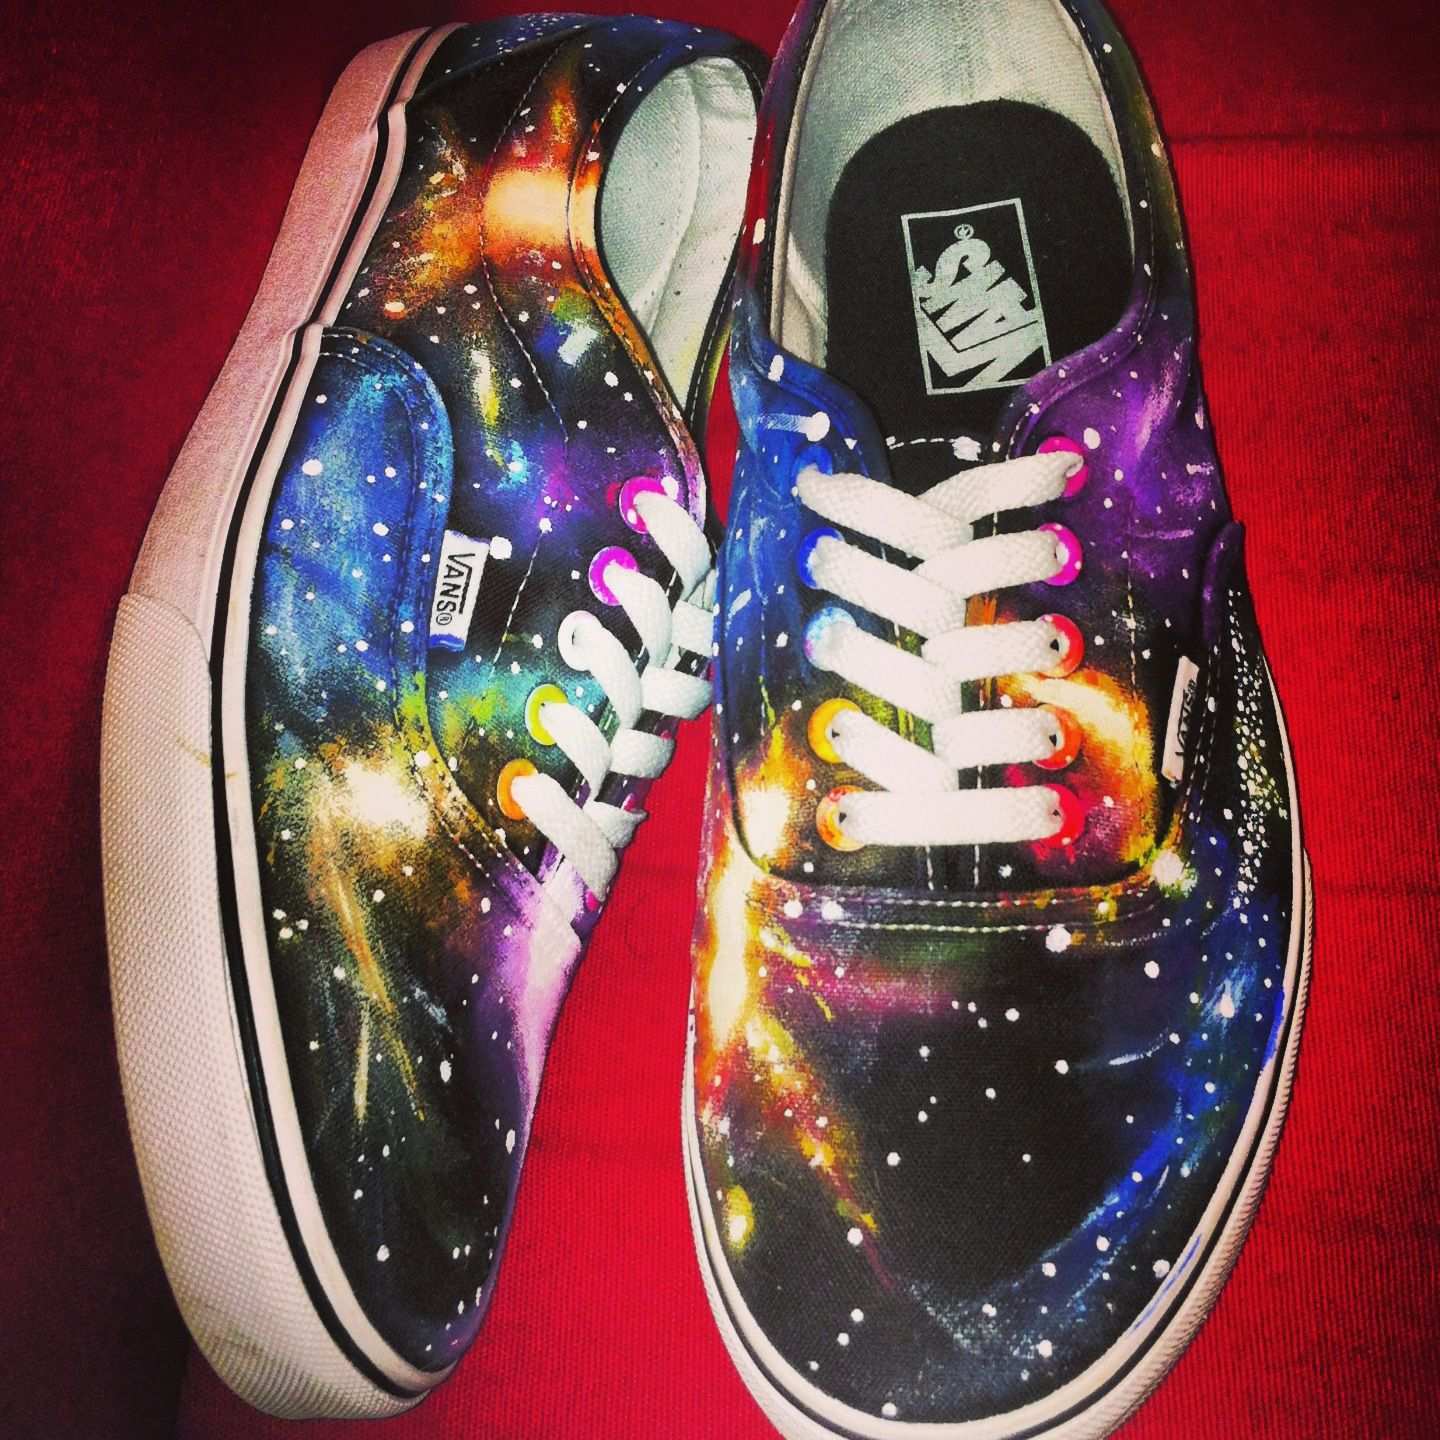 Self Painted Galaxy Vans Vans Diy Galaxy Stars Shoes Fashion Galaxy Shoes Diy Shoes Diy Galaxy Shoes